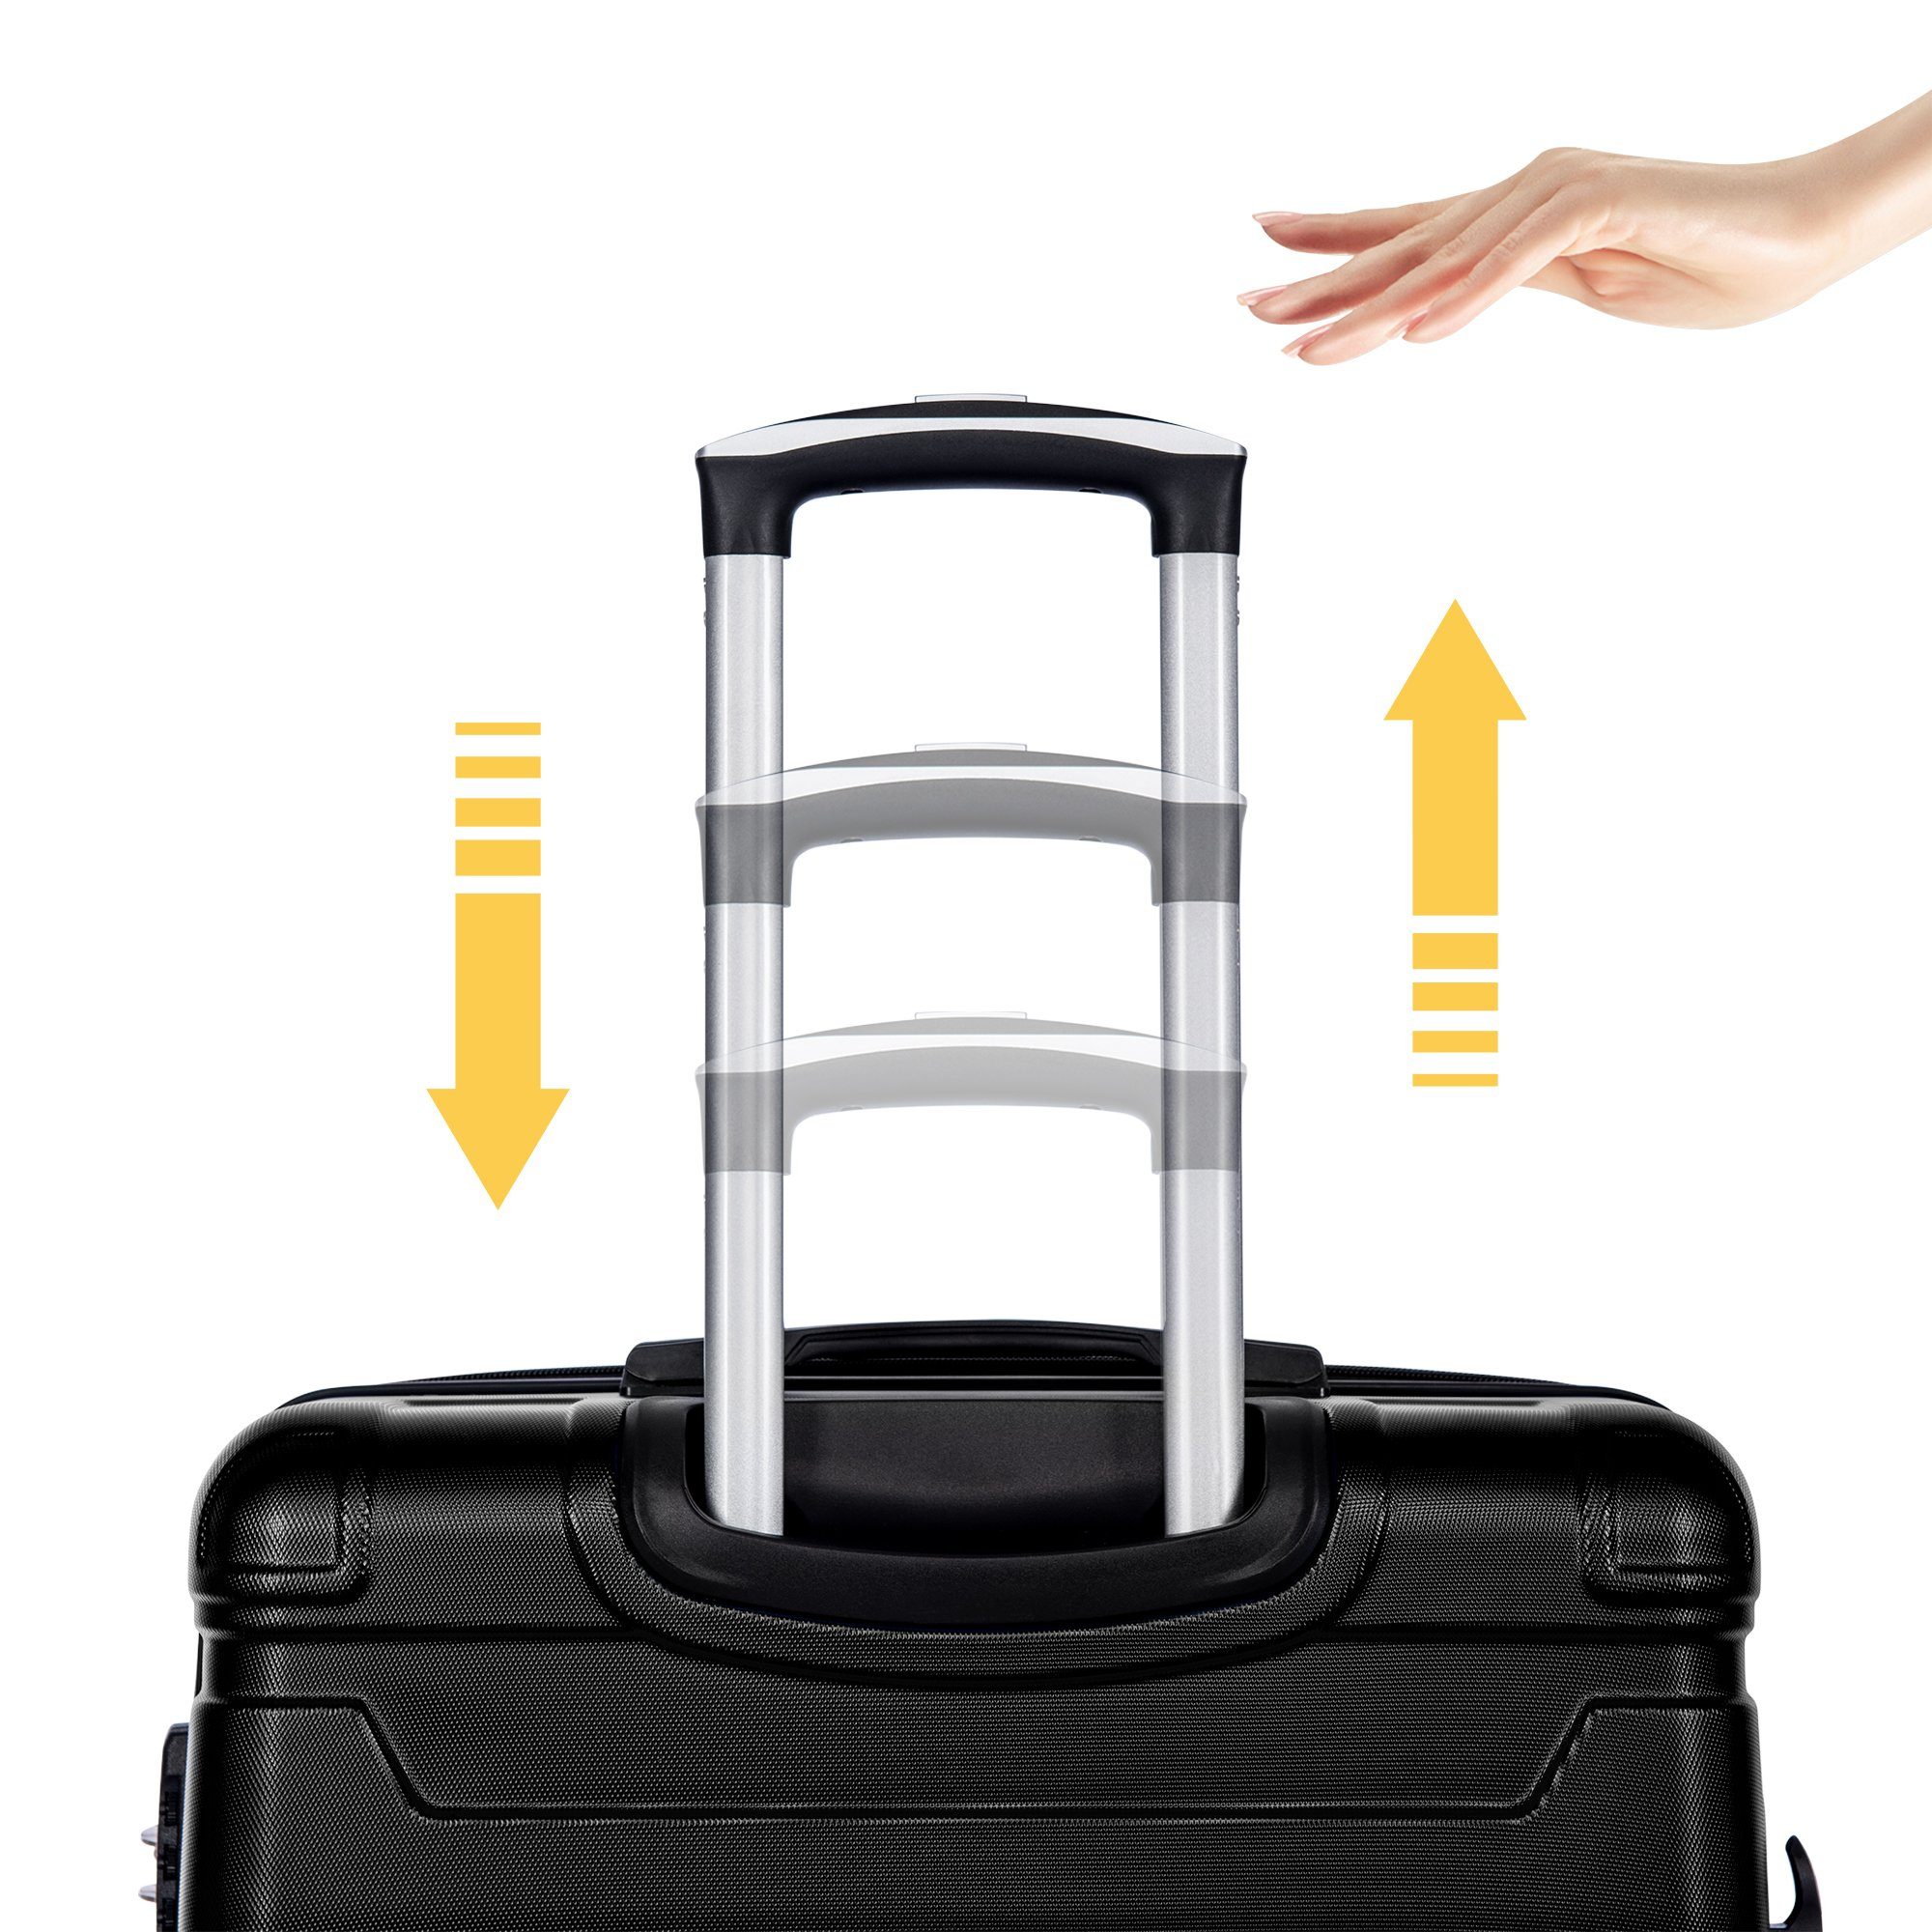 GLIESE Koffer mit TSA-Schloss und cm Universalrad, XL-47x31x75 Schwarz